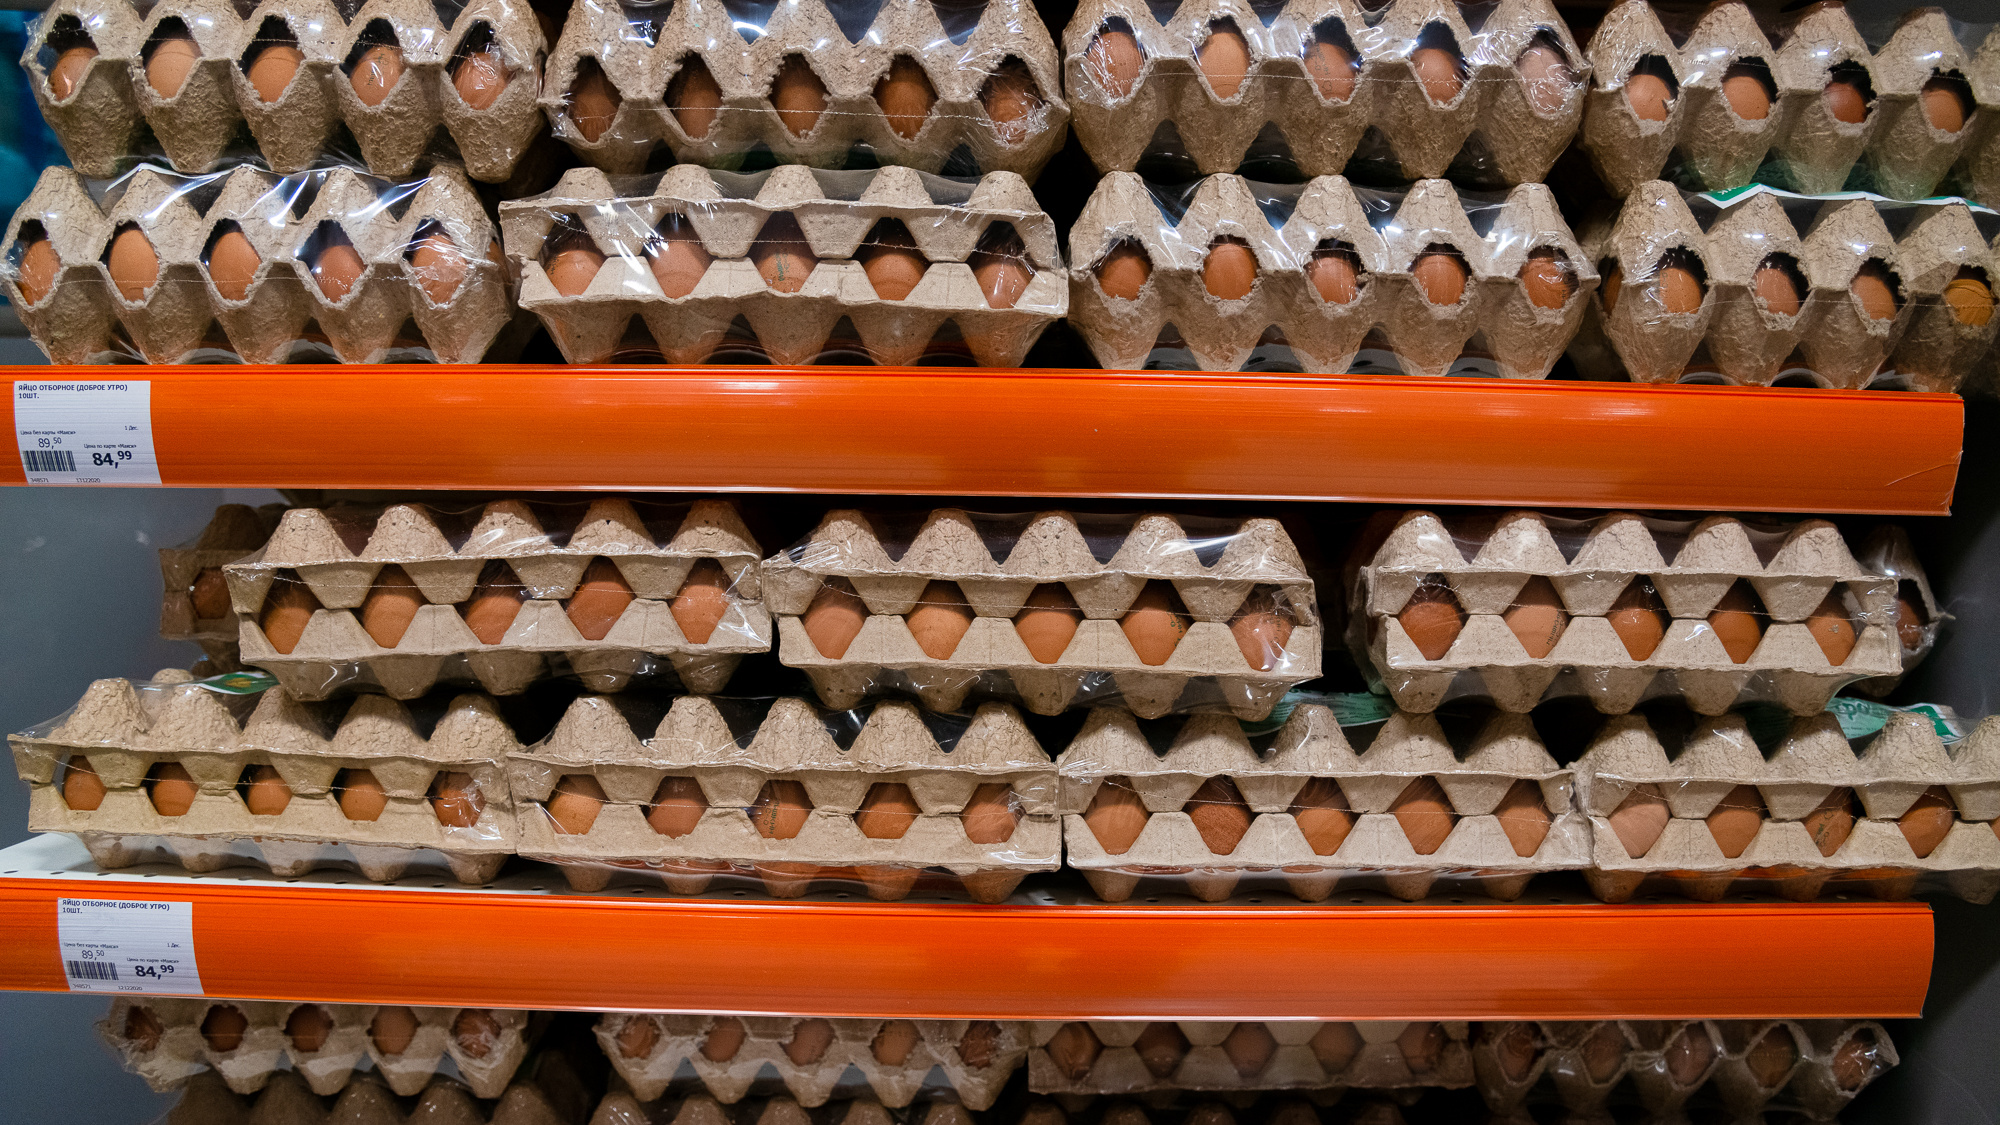 Яйца в магазинах подешевели впервые с июня. Падение цен вас рассмешит